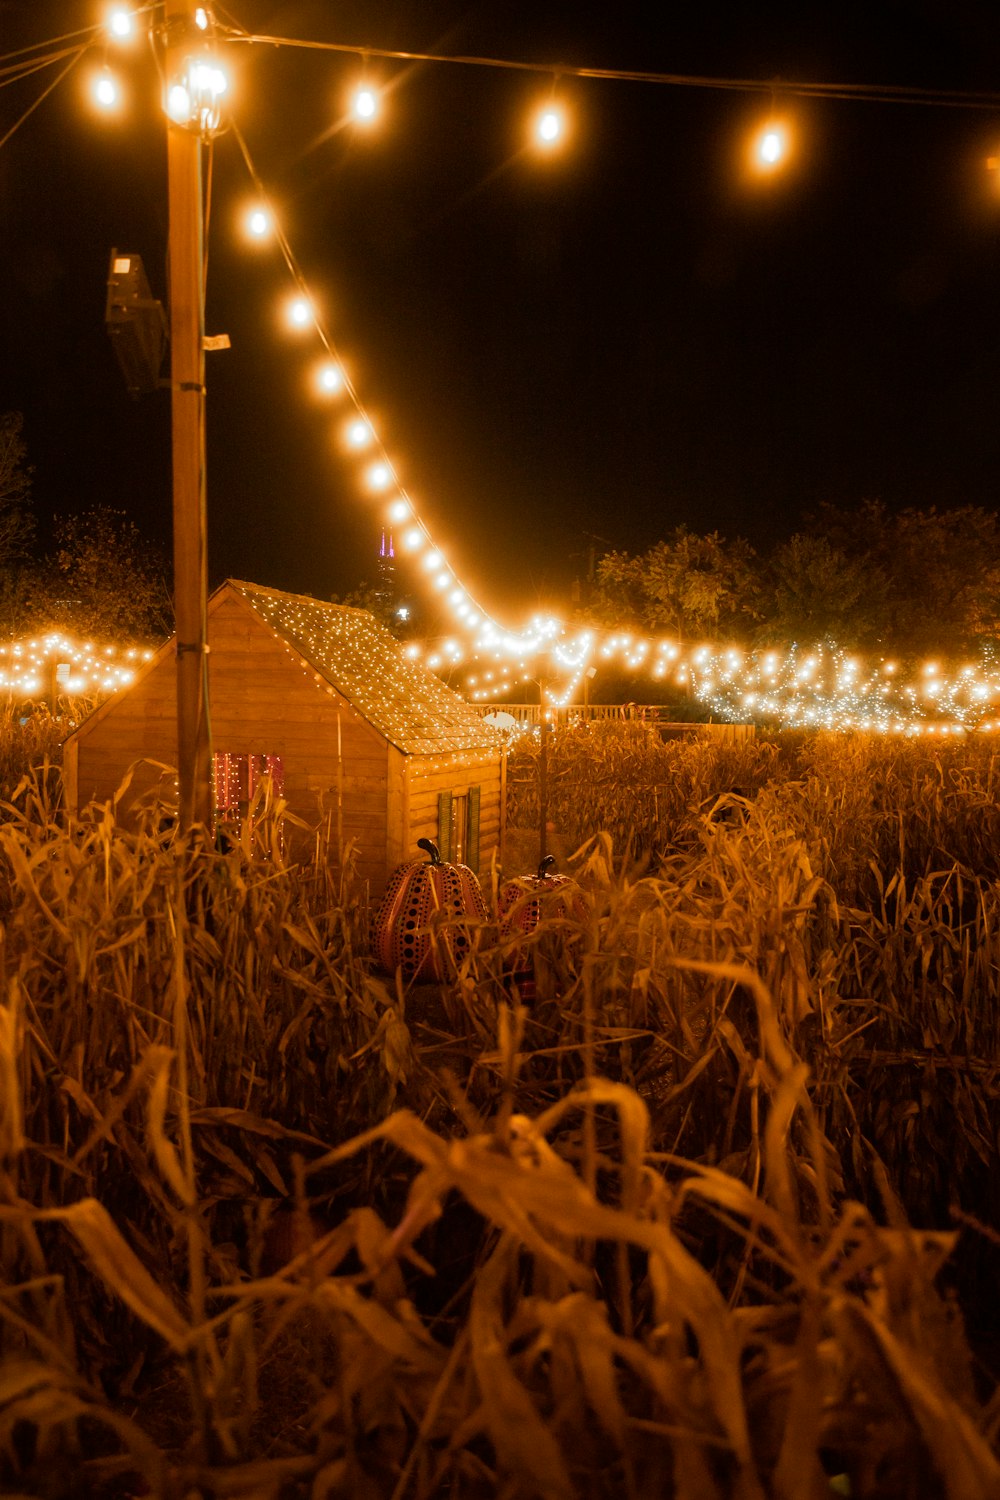 Casa de madera marrón con guirnaldas de luces durante la noche